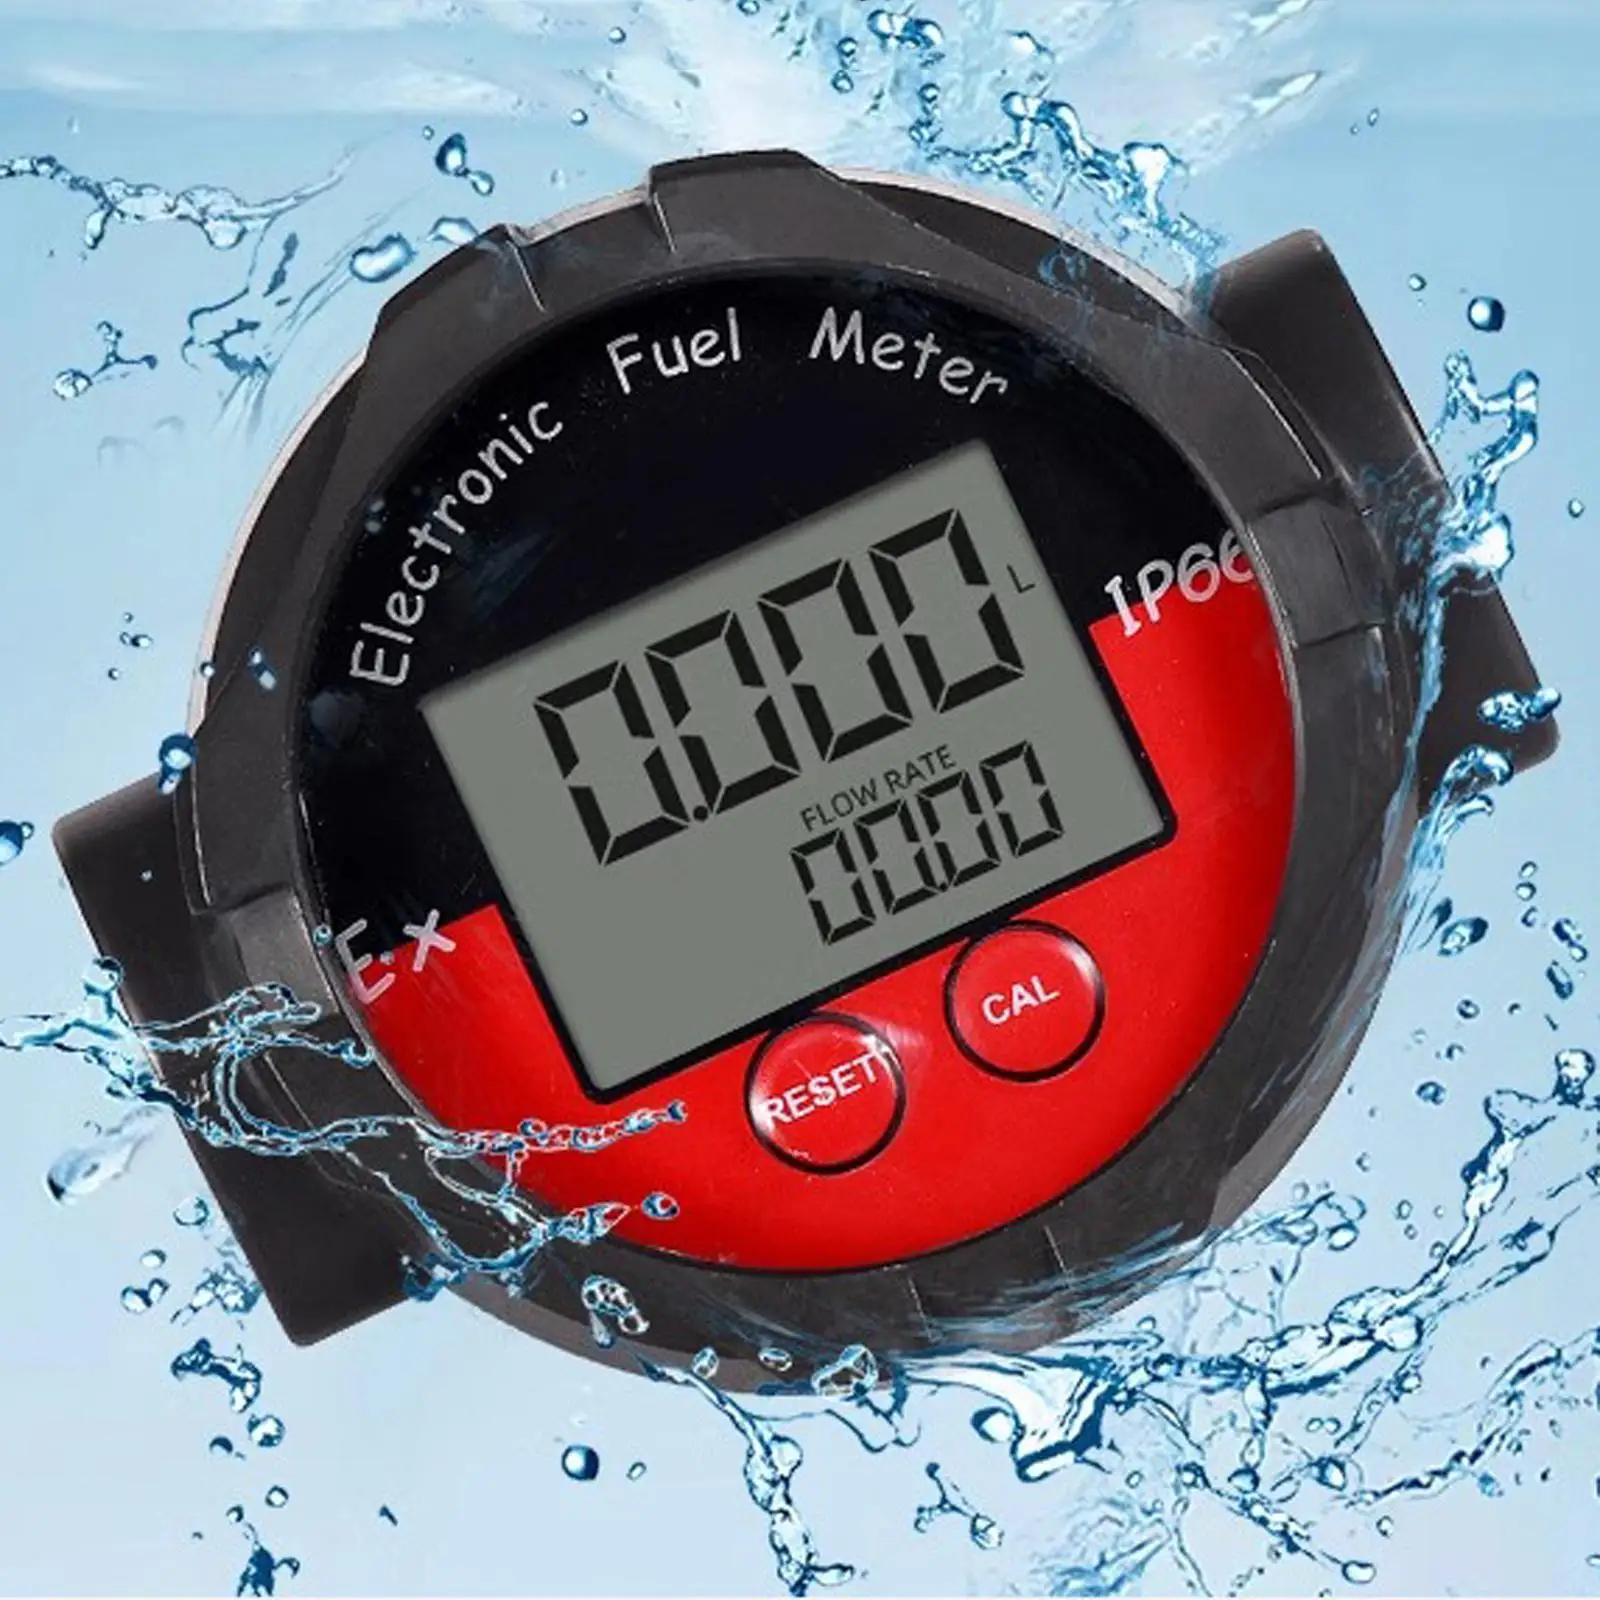 Oil Fuel Flowmeter Waterproof Multifunction LCD Display Gasoline Flow Meter